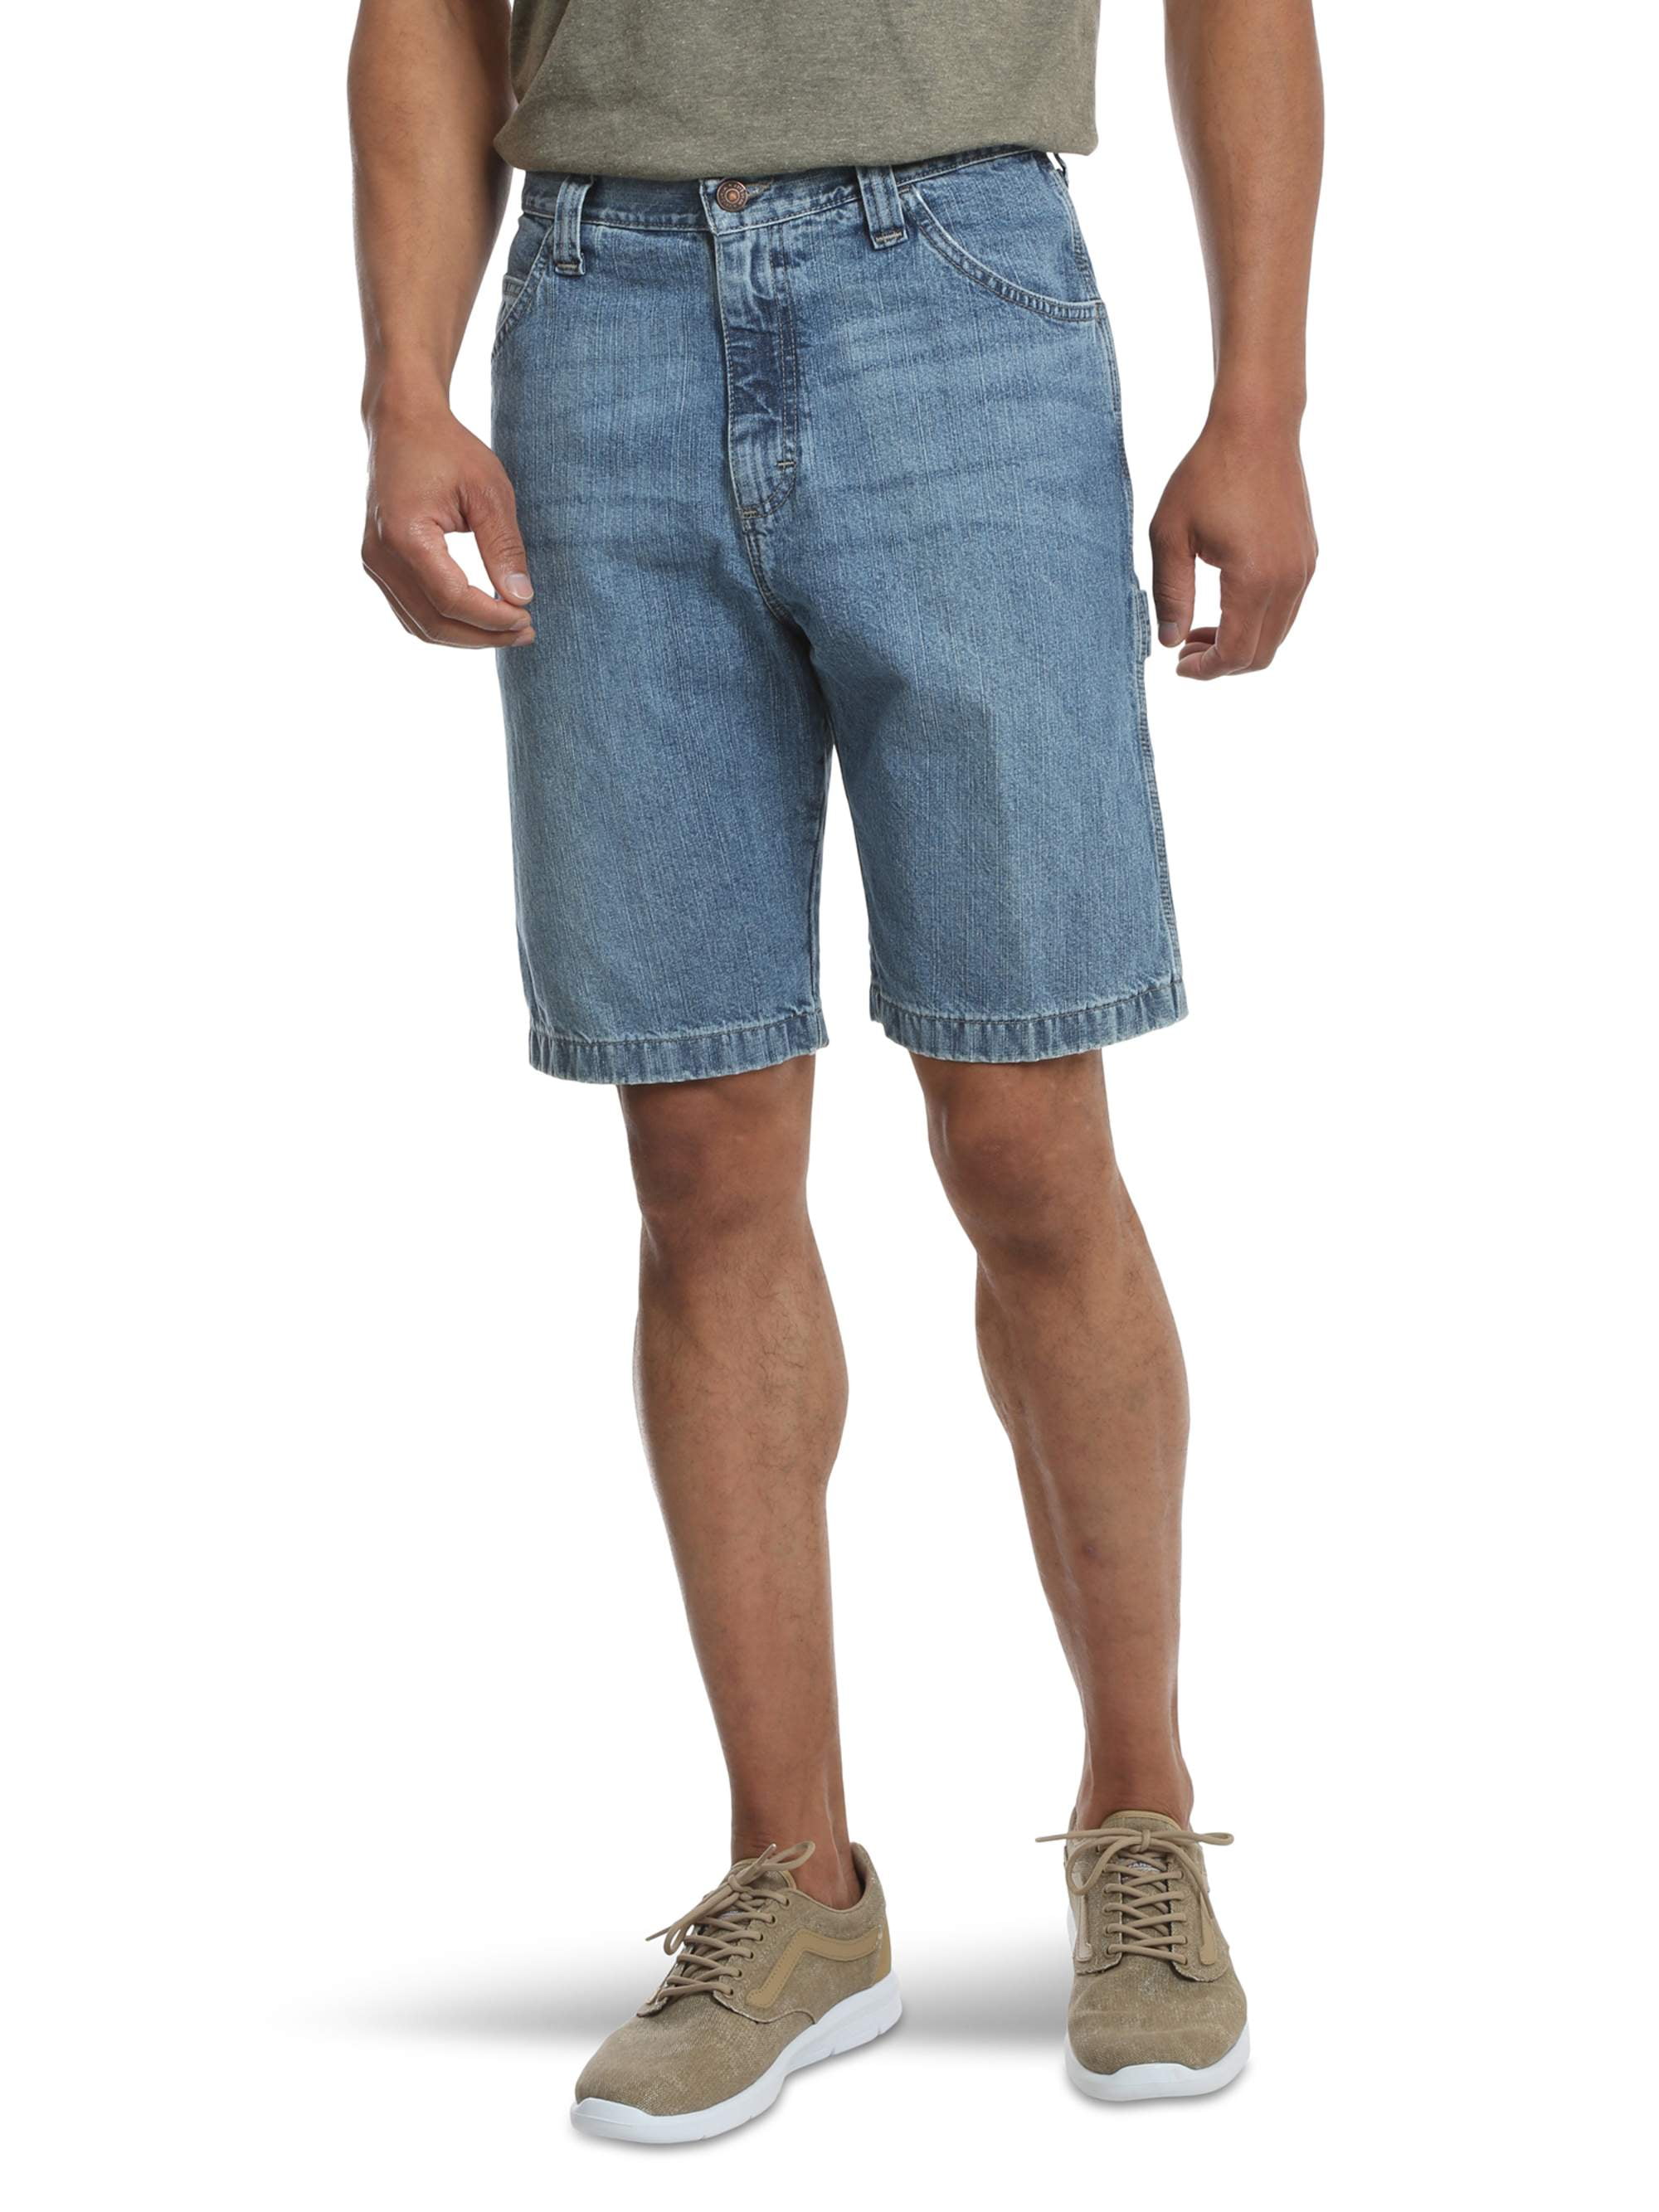 Wrangler Men's Denim Carpenter Shorts, Relaxed Fit 